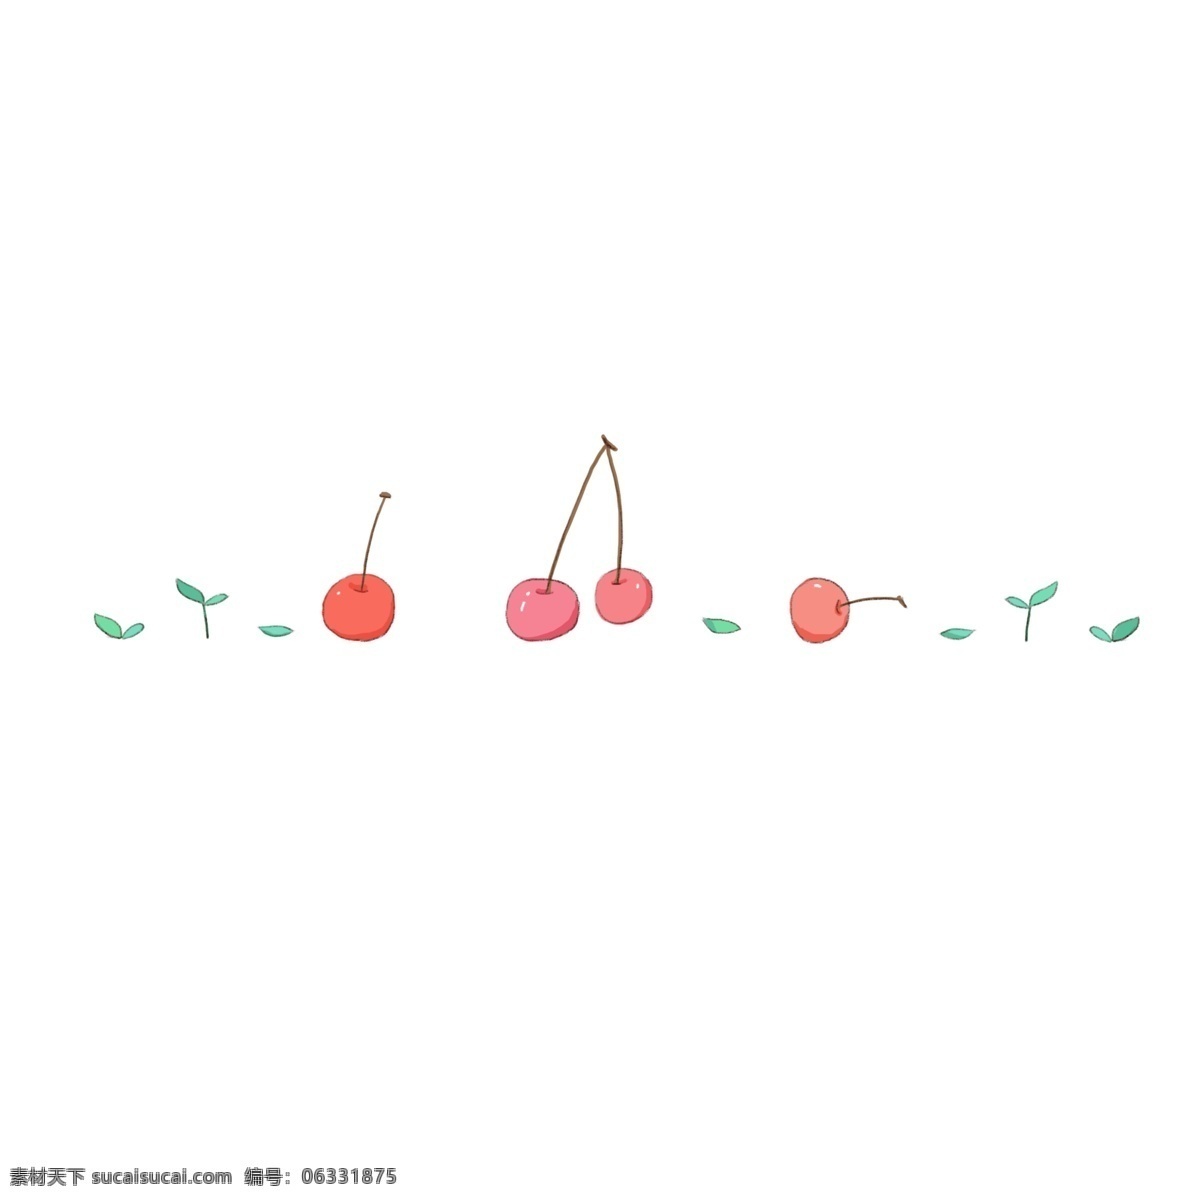 樱桃 叶子 分割线 插画 樱桃分割线 插图